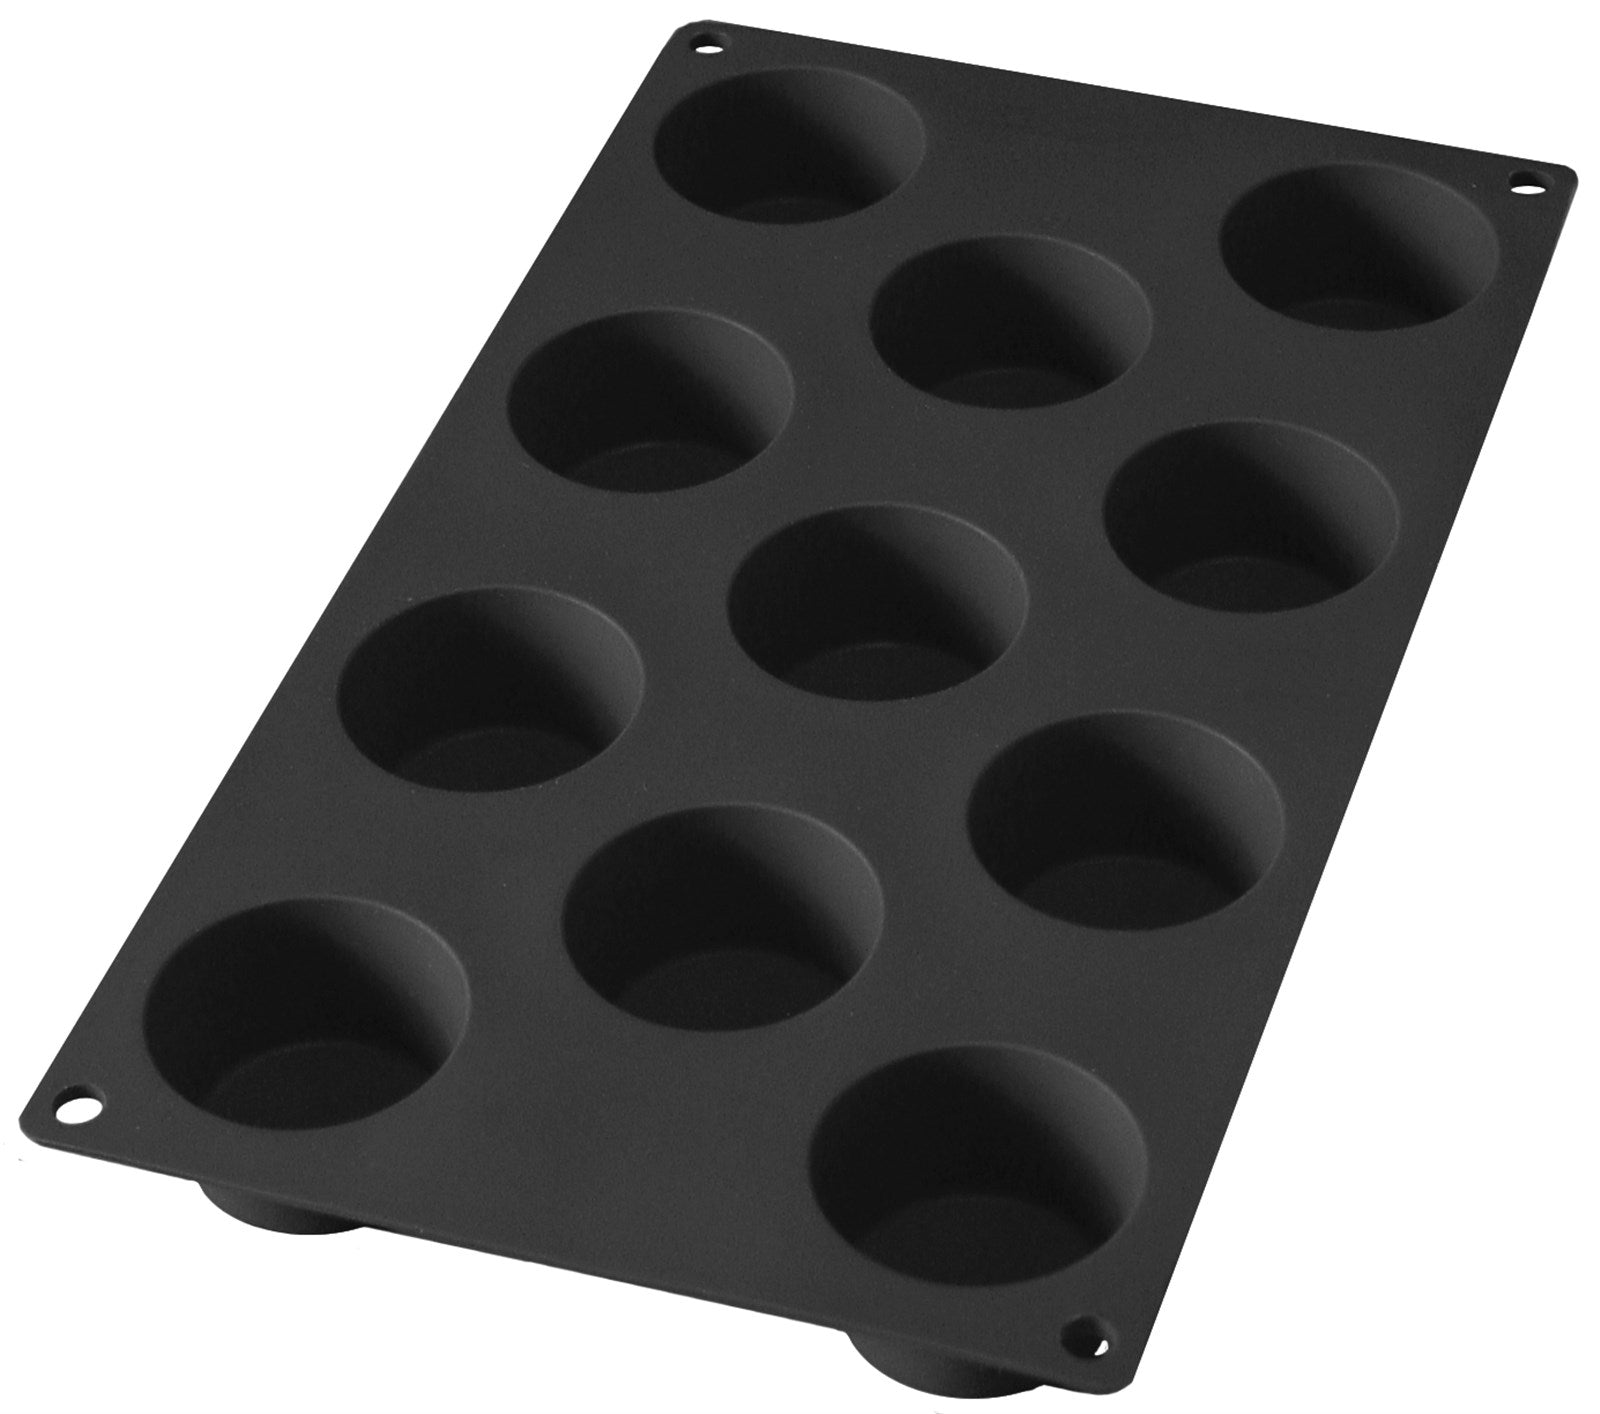 Backform 11er Muffin schwarz, Ø5 h: 3 cm in Schwarz präsentiert im Onlineshop von KAQTU Design AG. Backen ist von Lékué